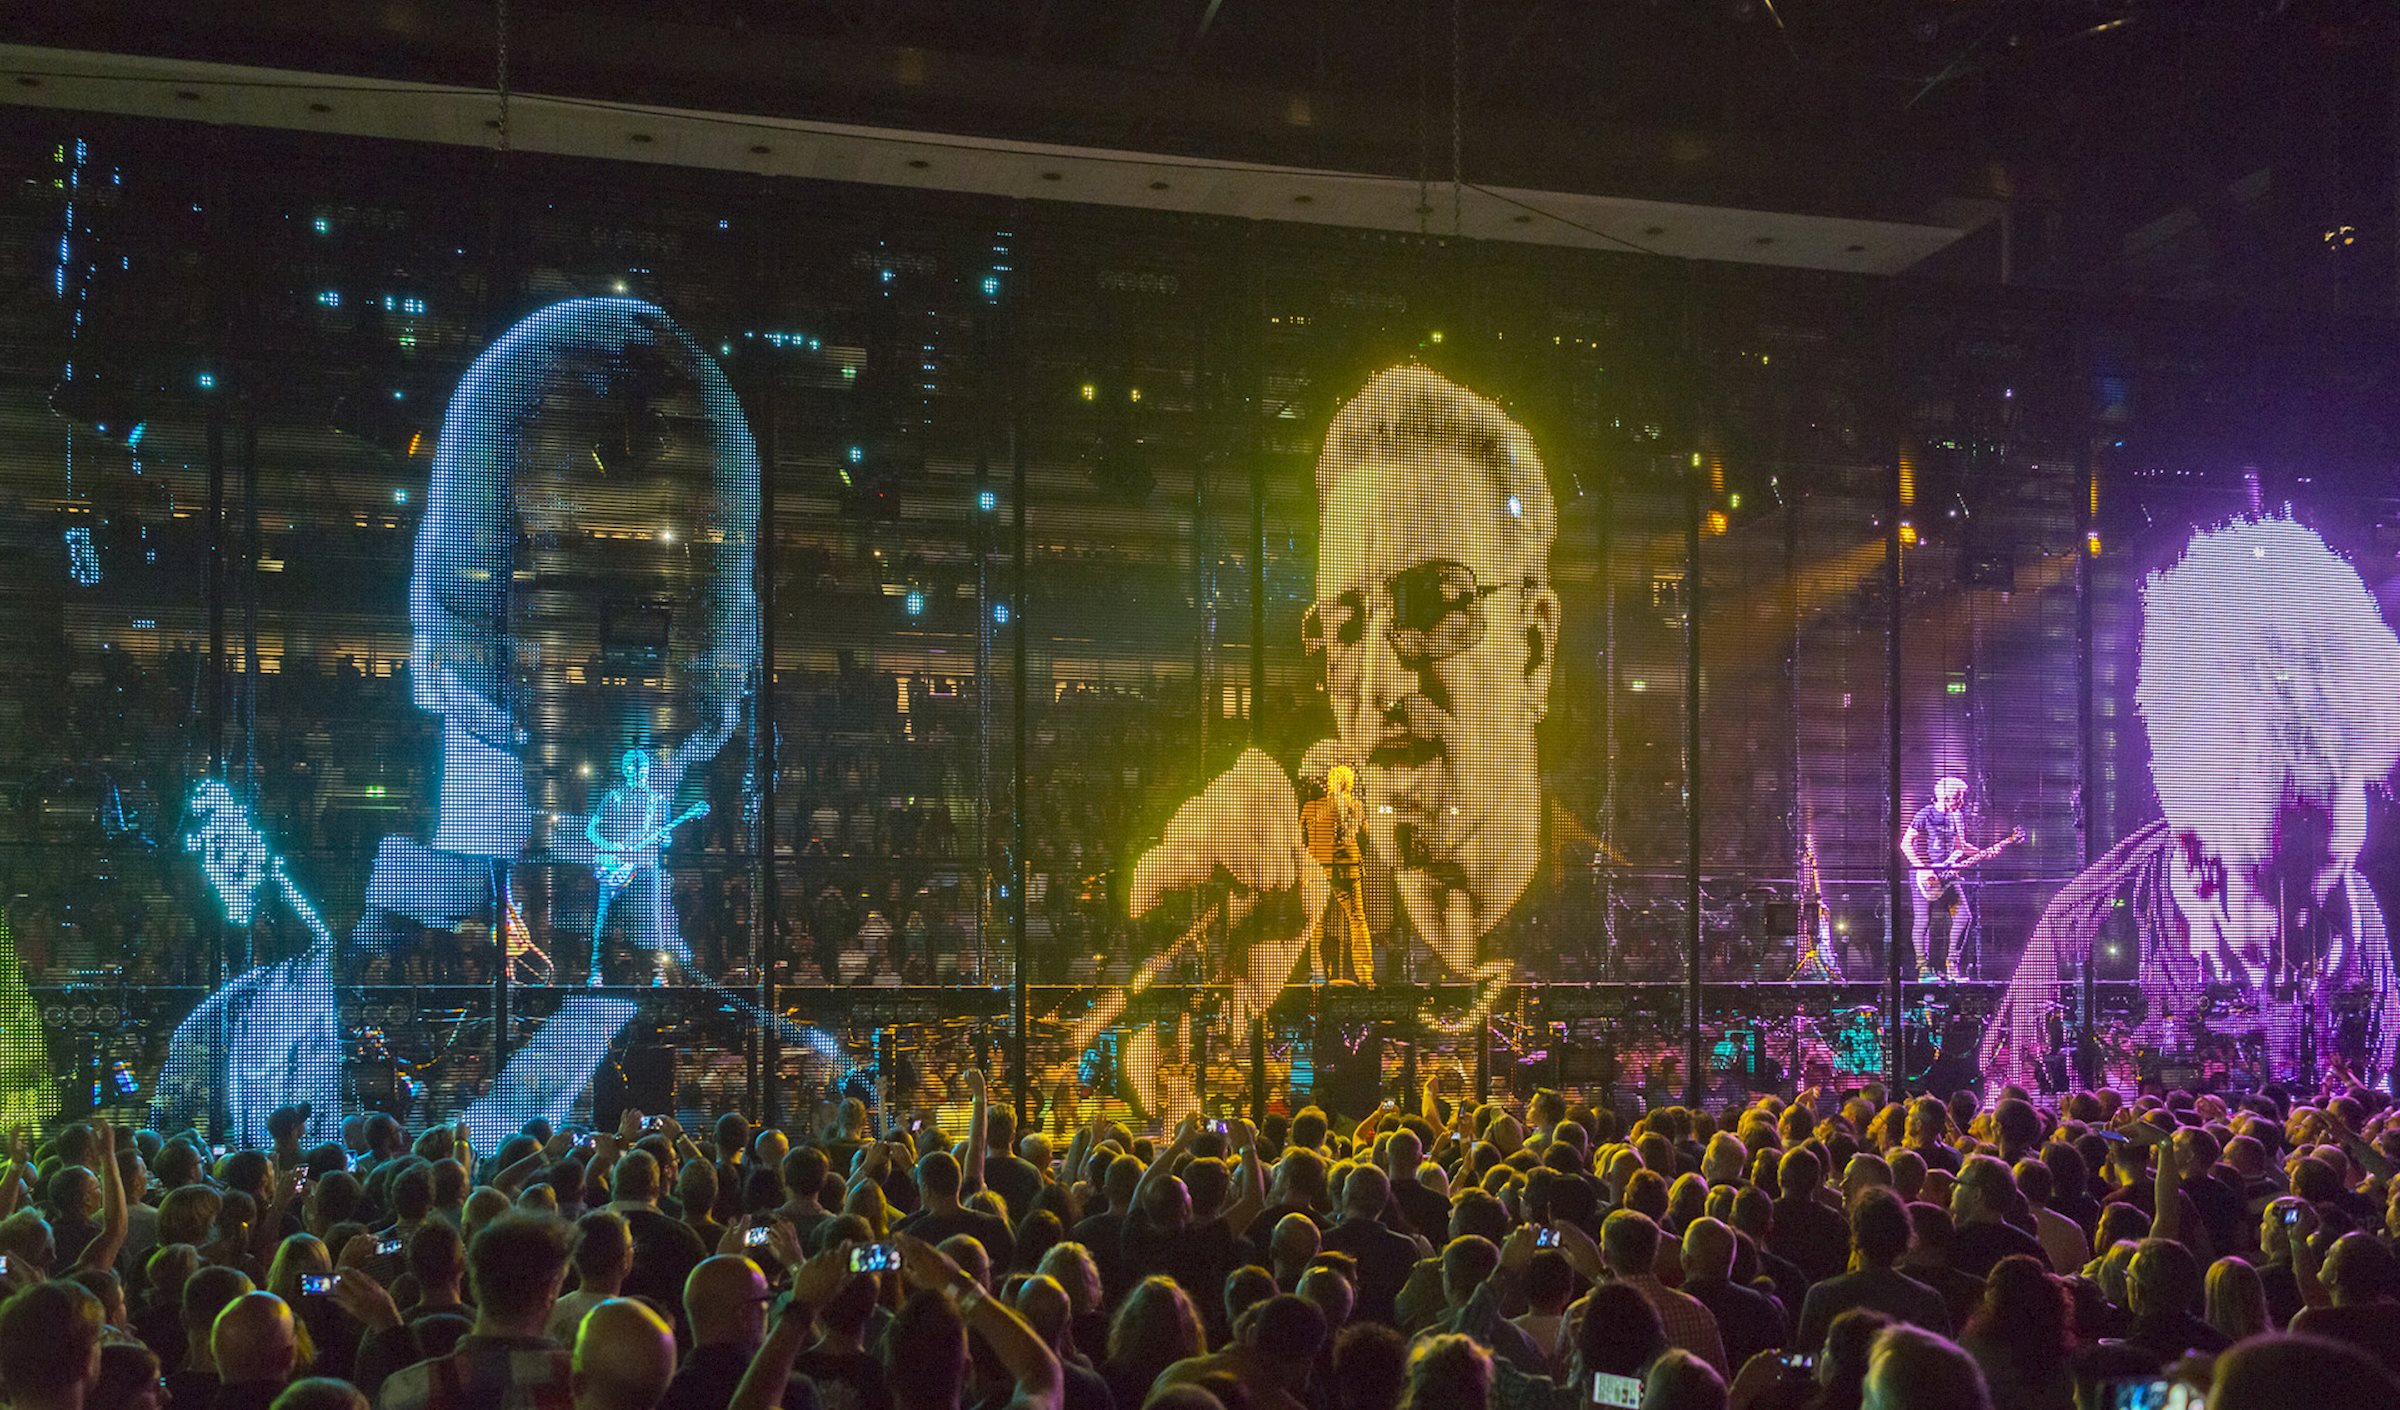 Pure10 et Rolling Video Floor Risers - PRG présente la nouvelle révolution Touring en direct avec la tournée Experience + Innocence de U2